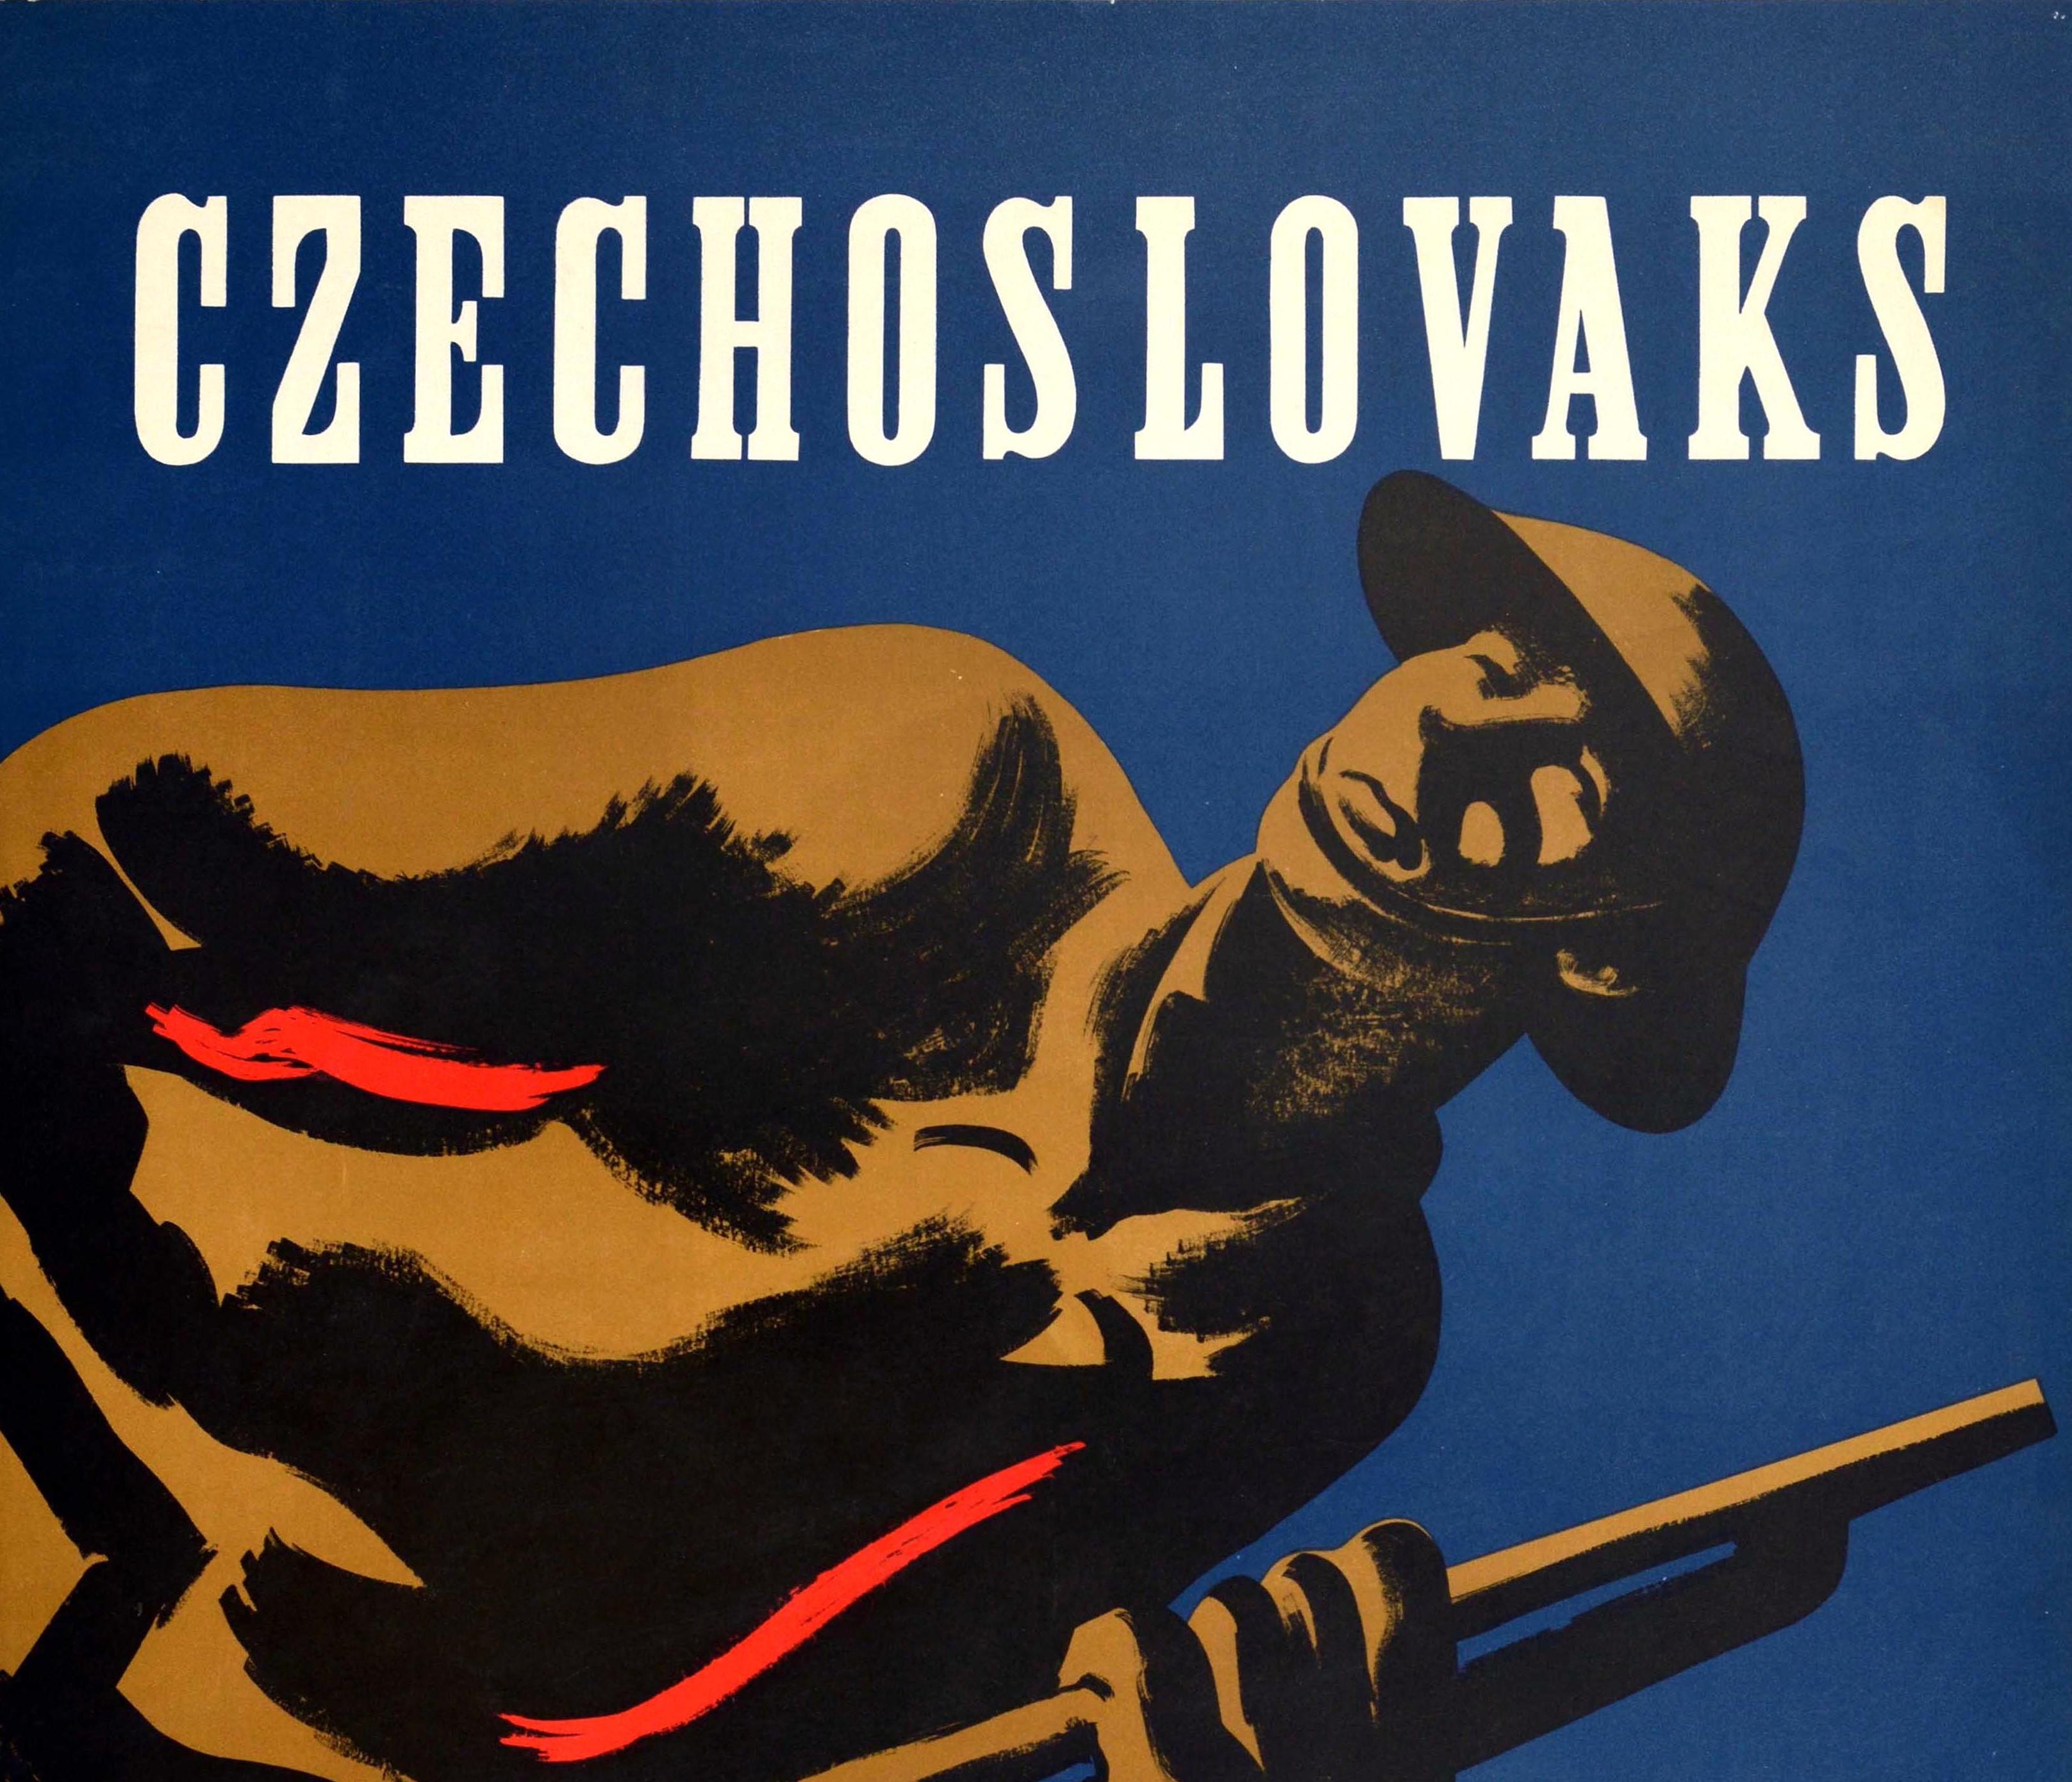 Affiche de propagande originale de la Seconde Guerre mondiale - Czechoslovaks Carry On - présentant une image dynamique d'un soldat tenant un fusil devant des soldats et des drapeaux sur un fond bleu profond, les lettres blanches en gras au-dessus